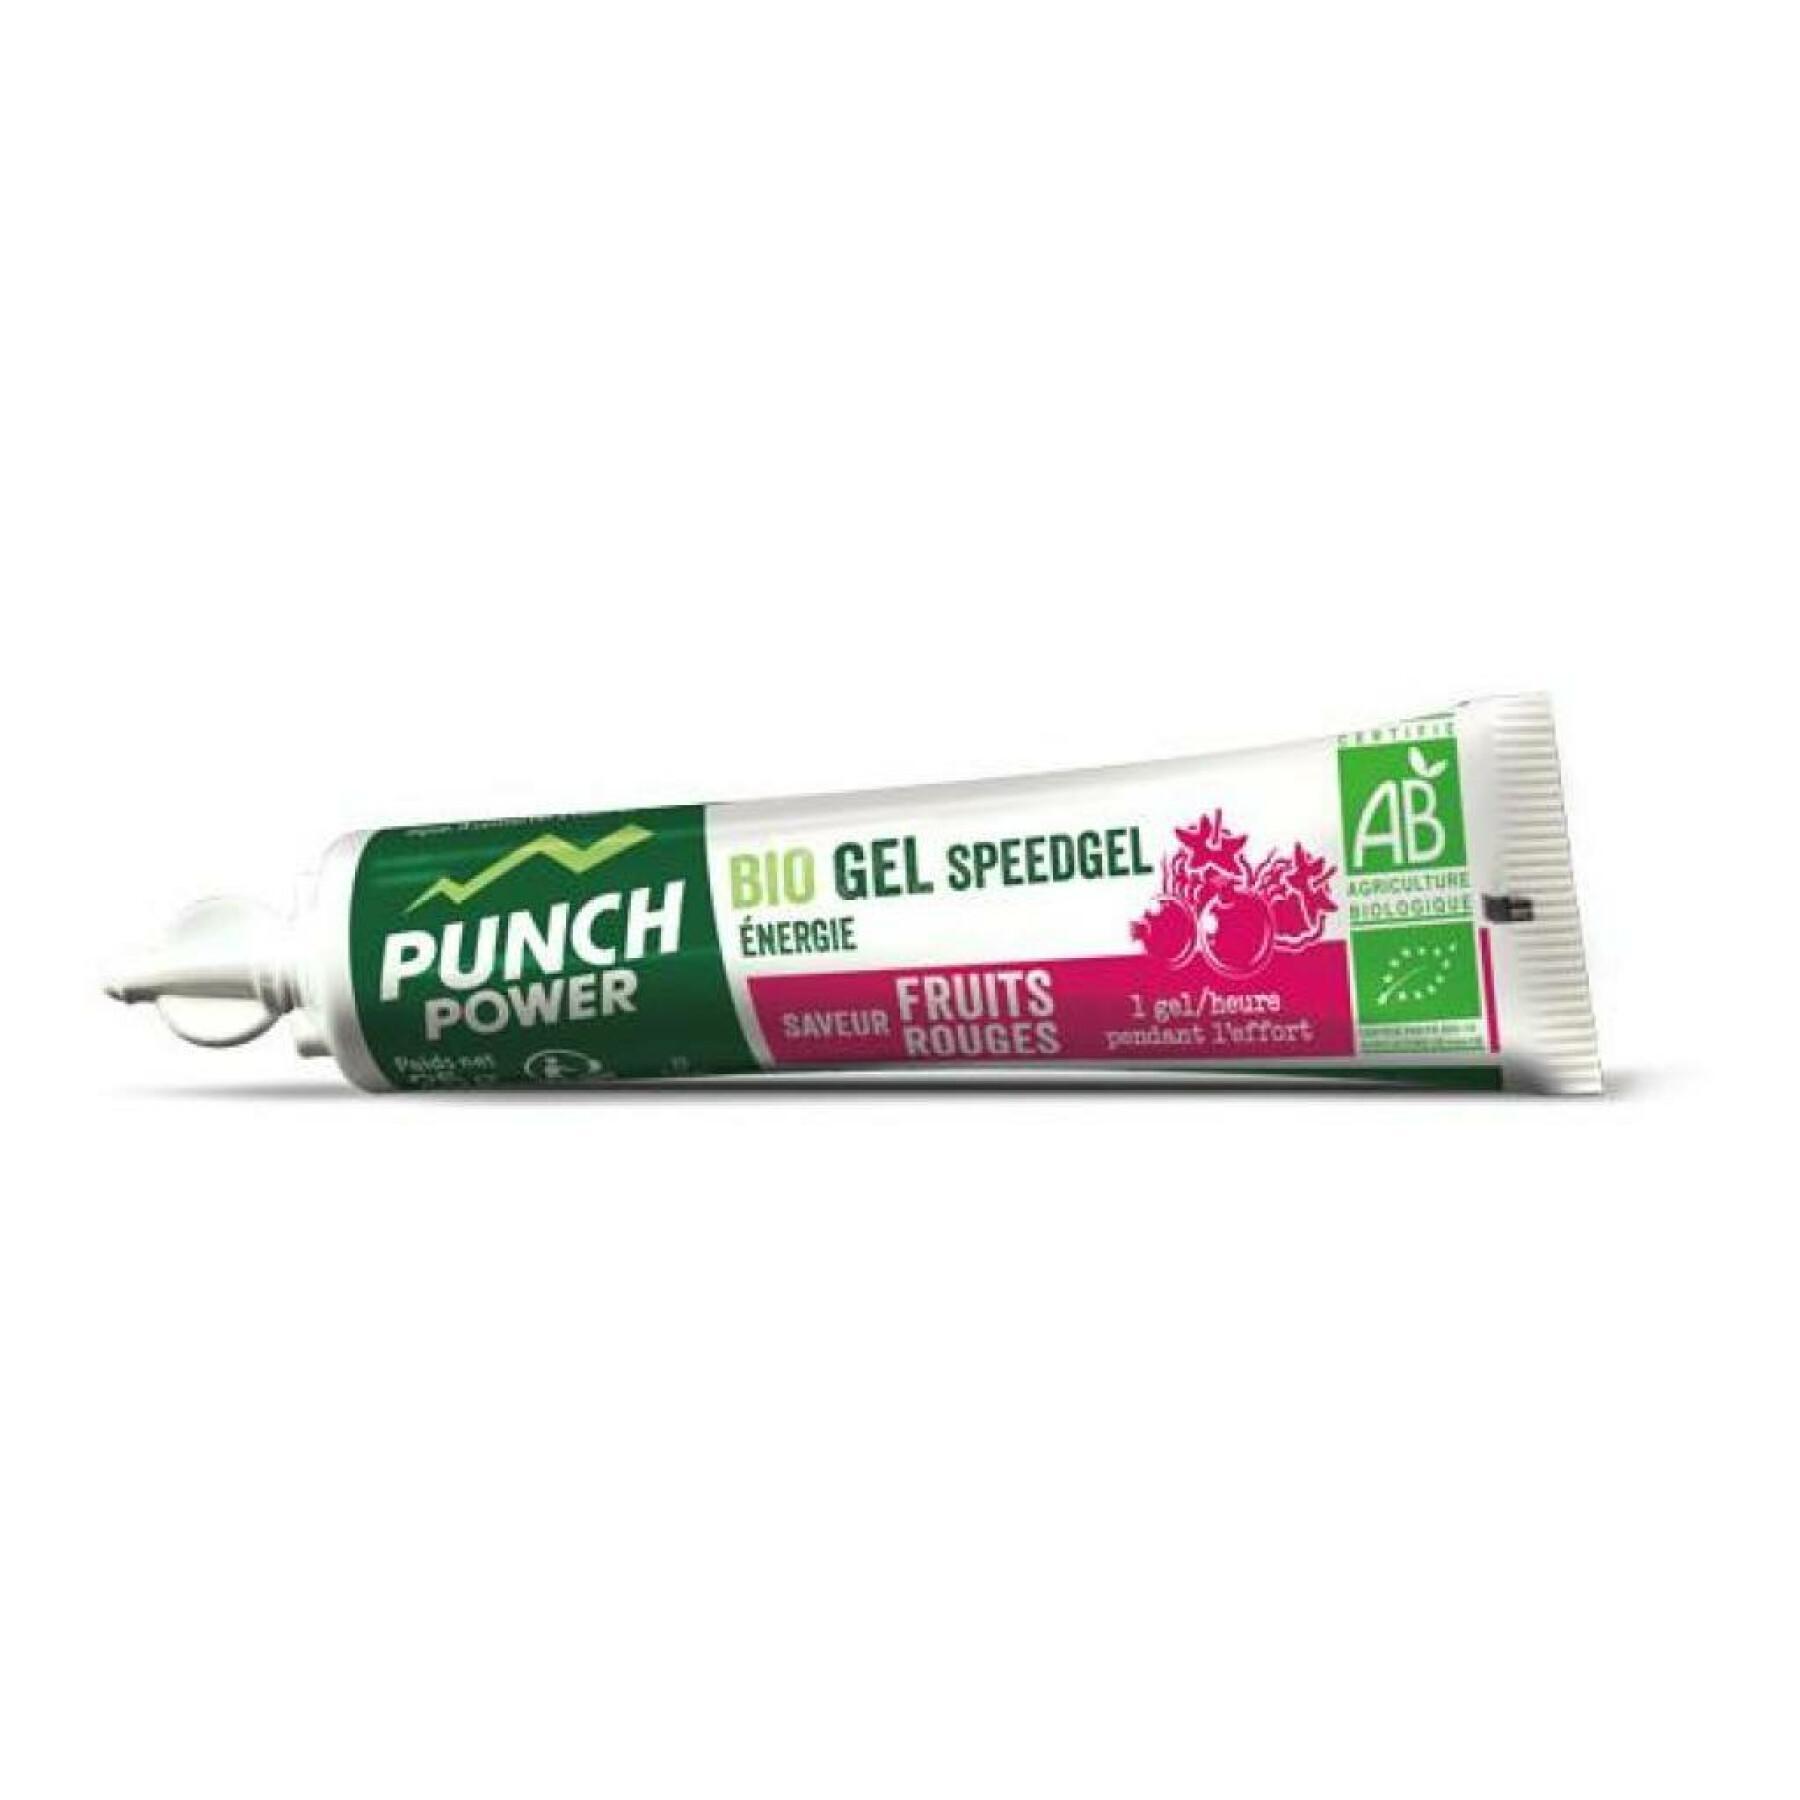 Energie-Gel Punch Power Speedgel Fruits rouges (x40)